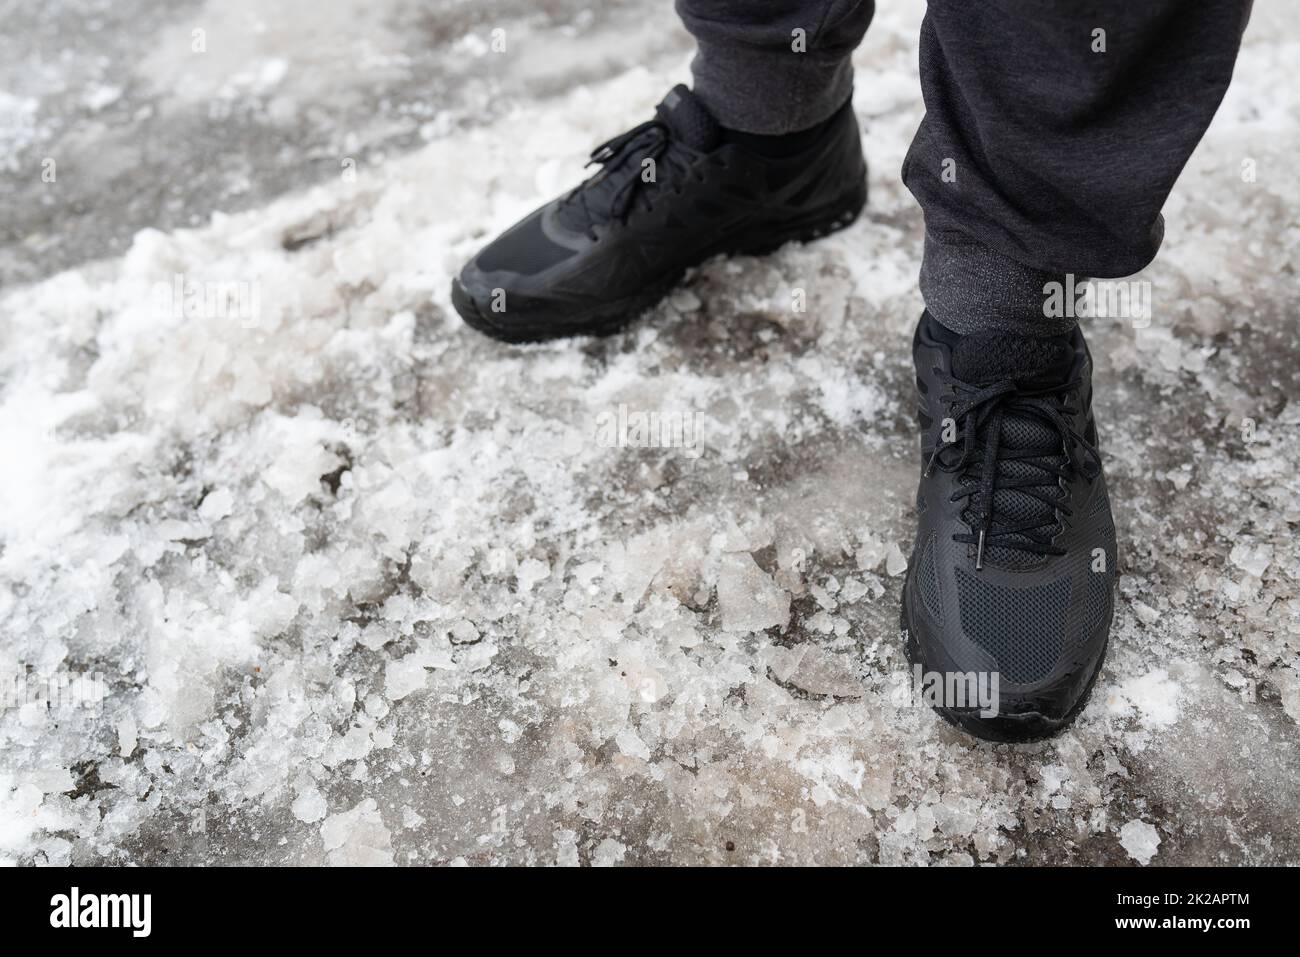 Le sneaker impermeabili uomo d'inverno si trovano su una strada ghiacciata, scarpe per passeggiate invernali. Passeggiate all'aria aperta. Foto Stock